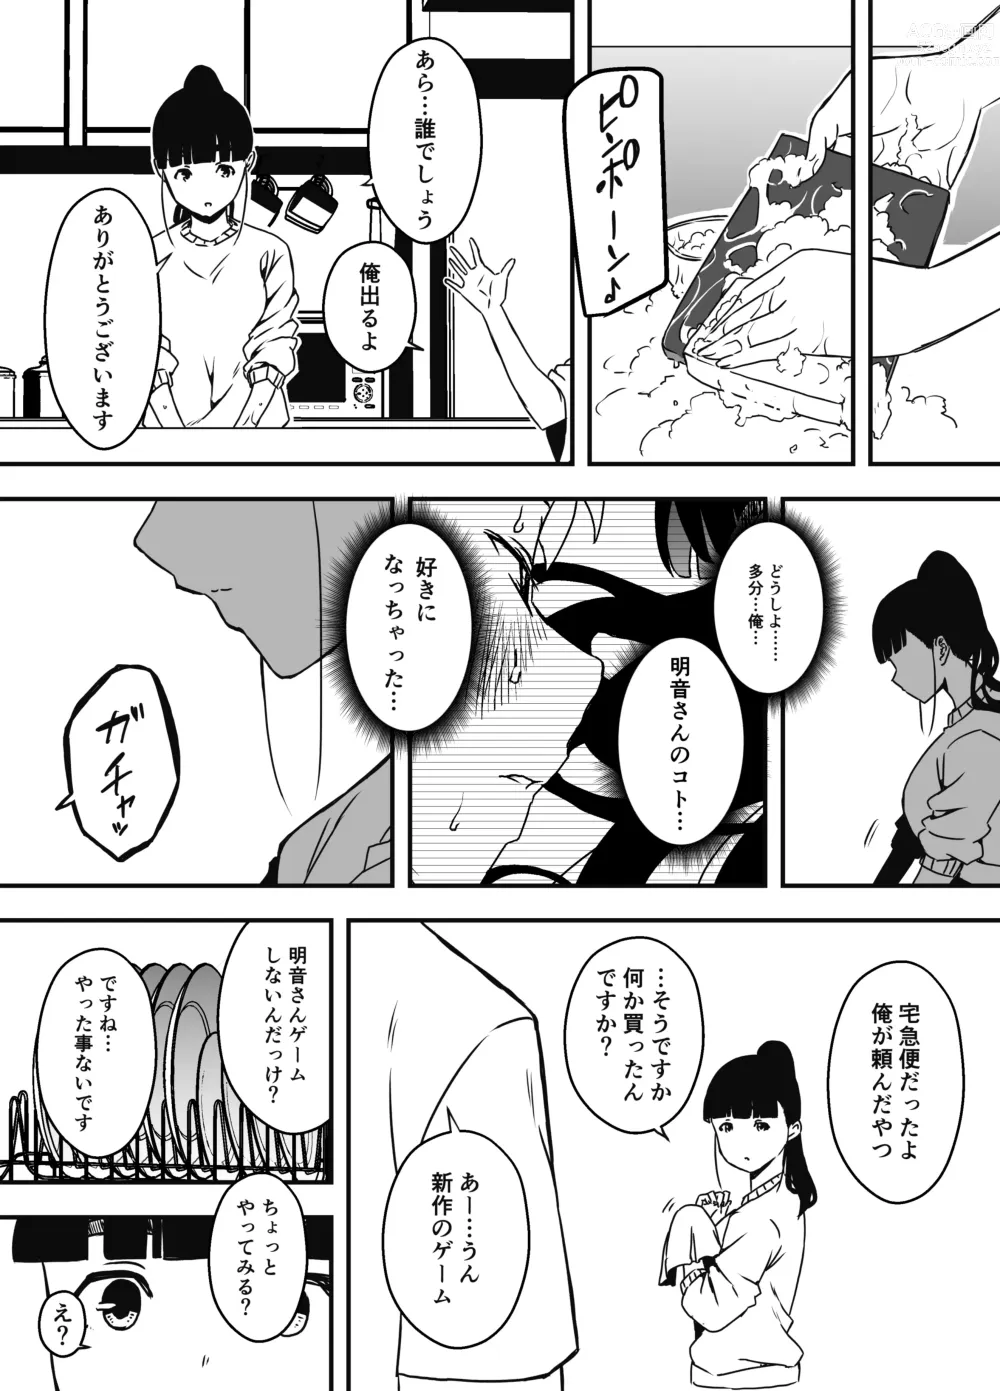 Page 22 of doujinshi Giri no Ane to no 7-kakan Seikatsu - 5